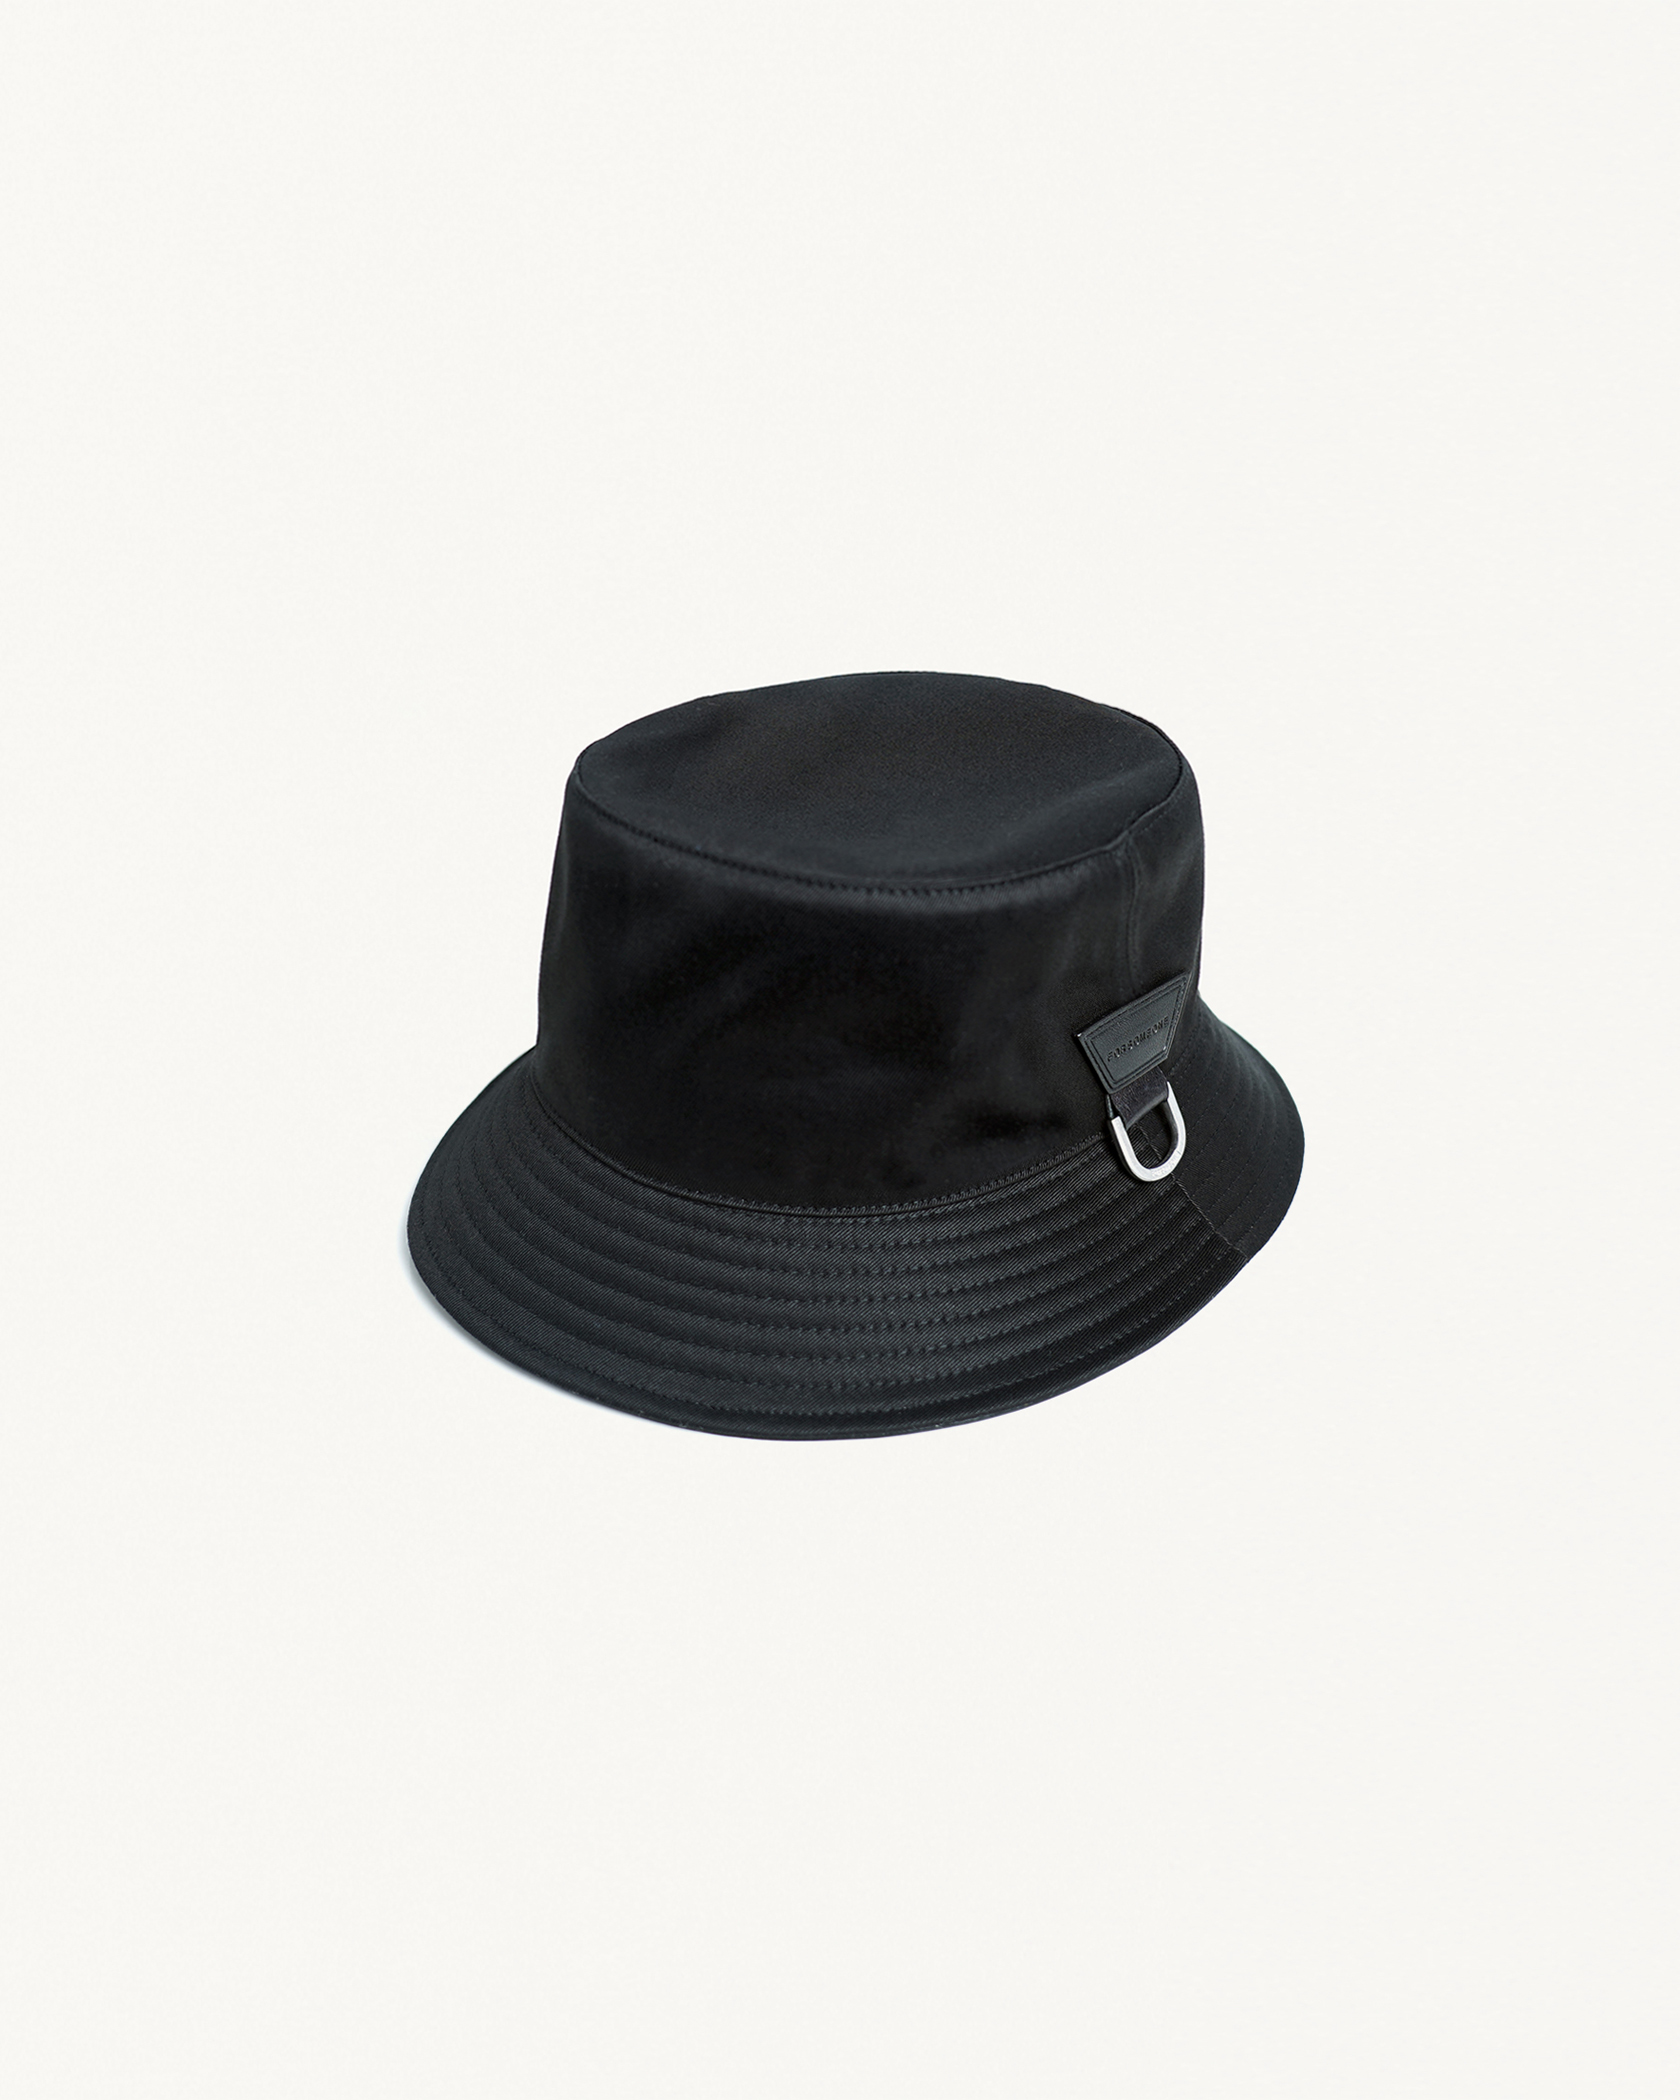 COTTON MOUNT HAT 2.0 詳細画像 Black x Silver 1